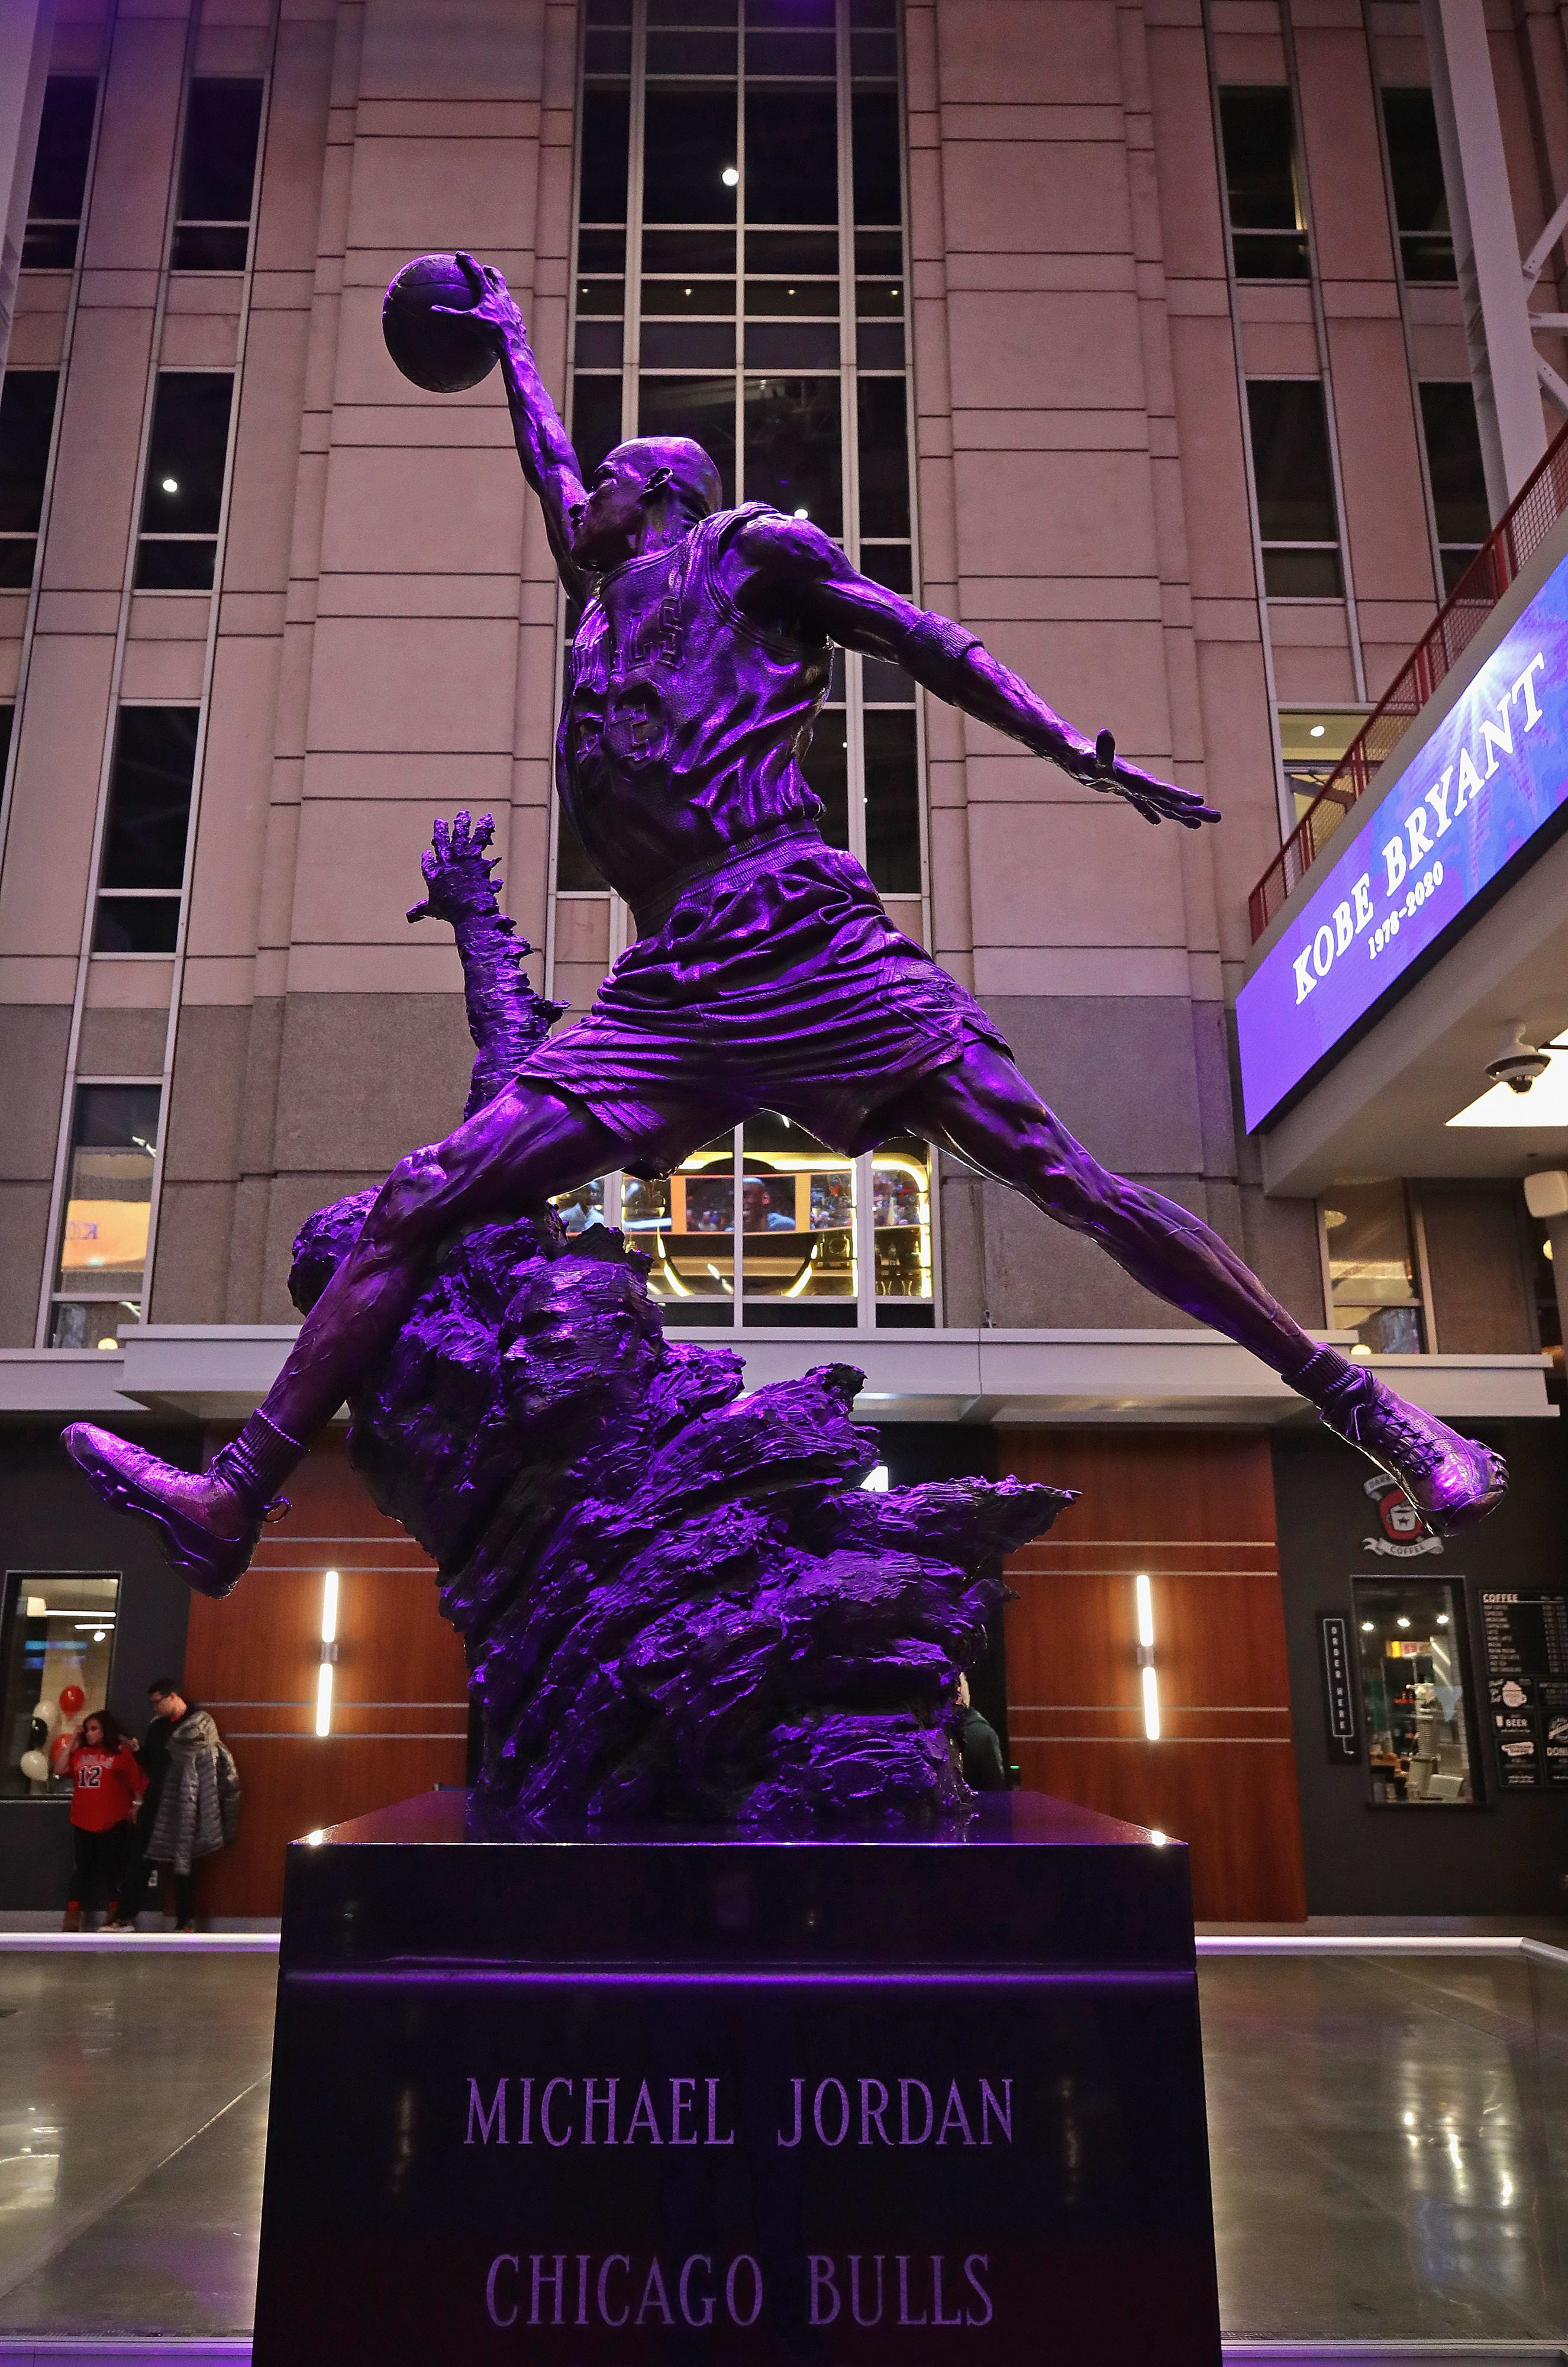 הפסל של מייקל ג'ורדן בשיקגו